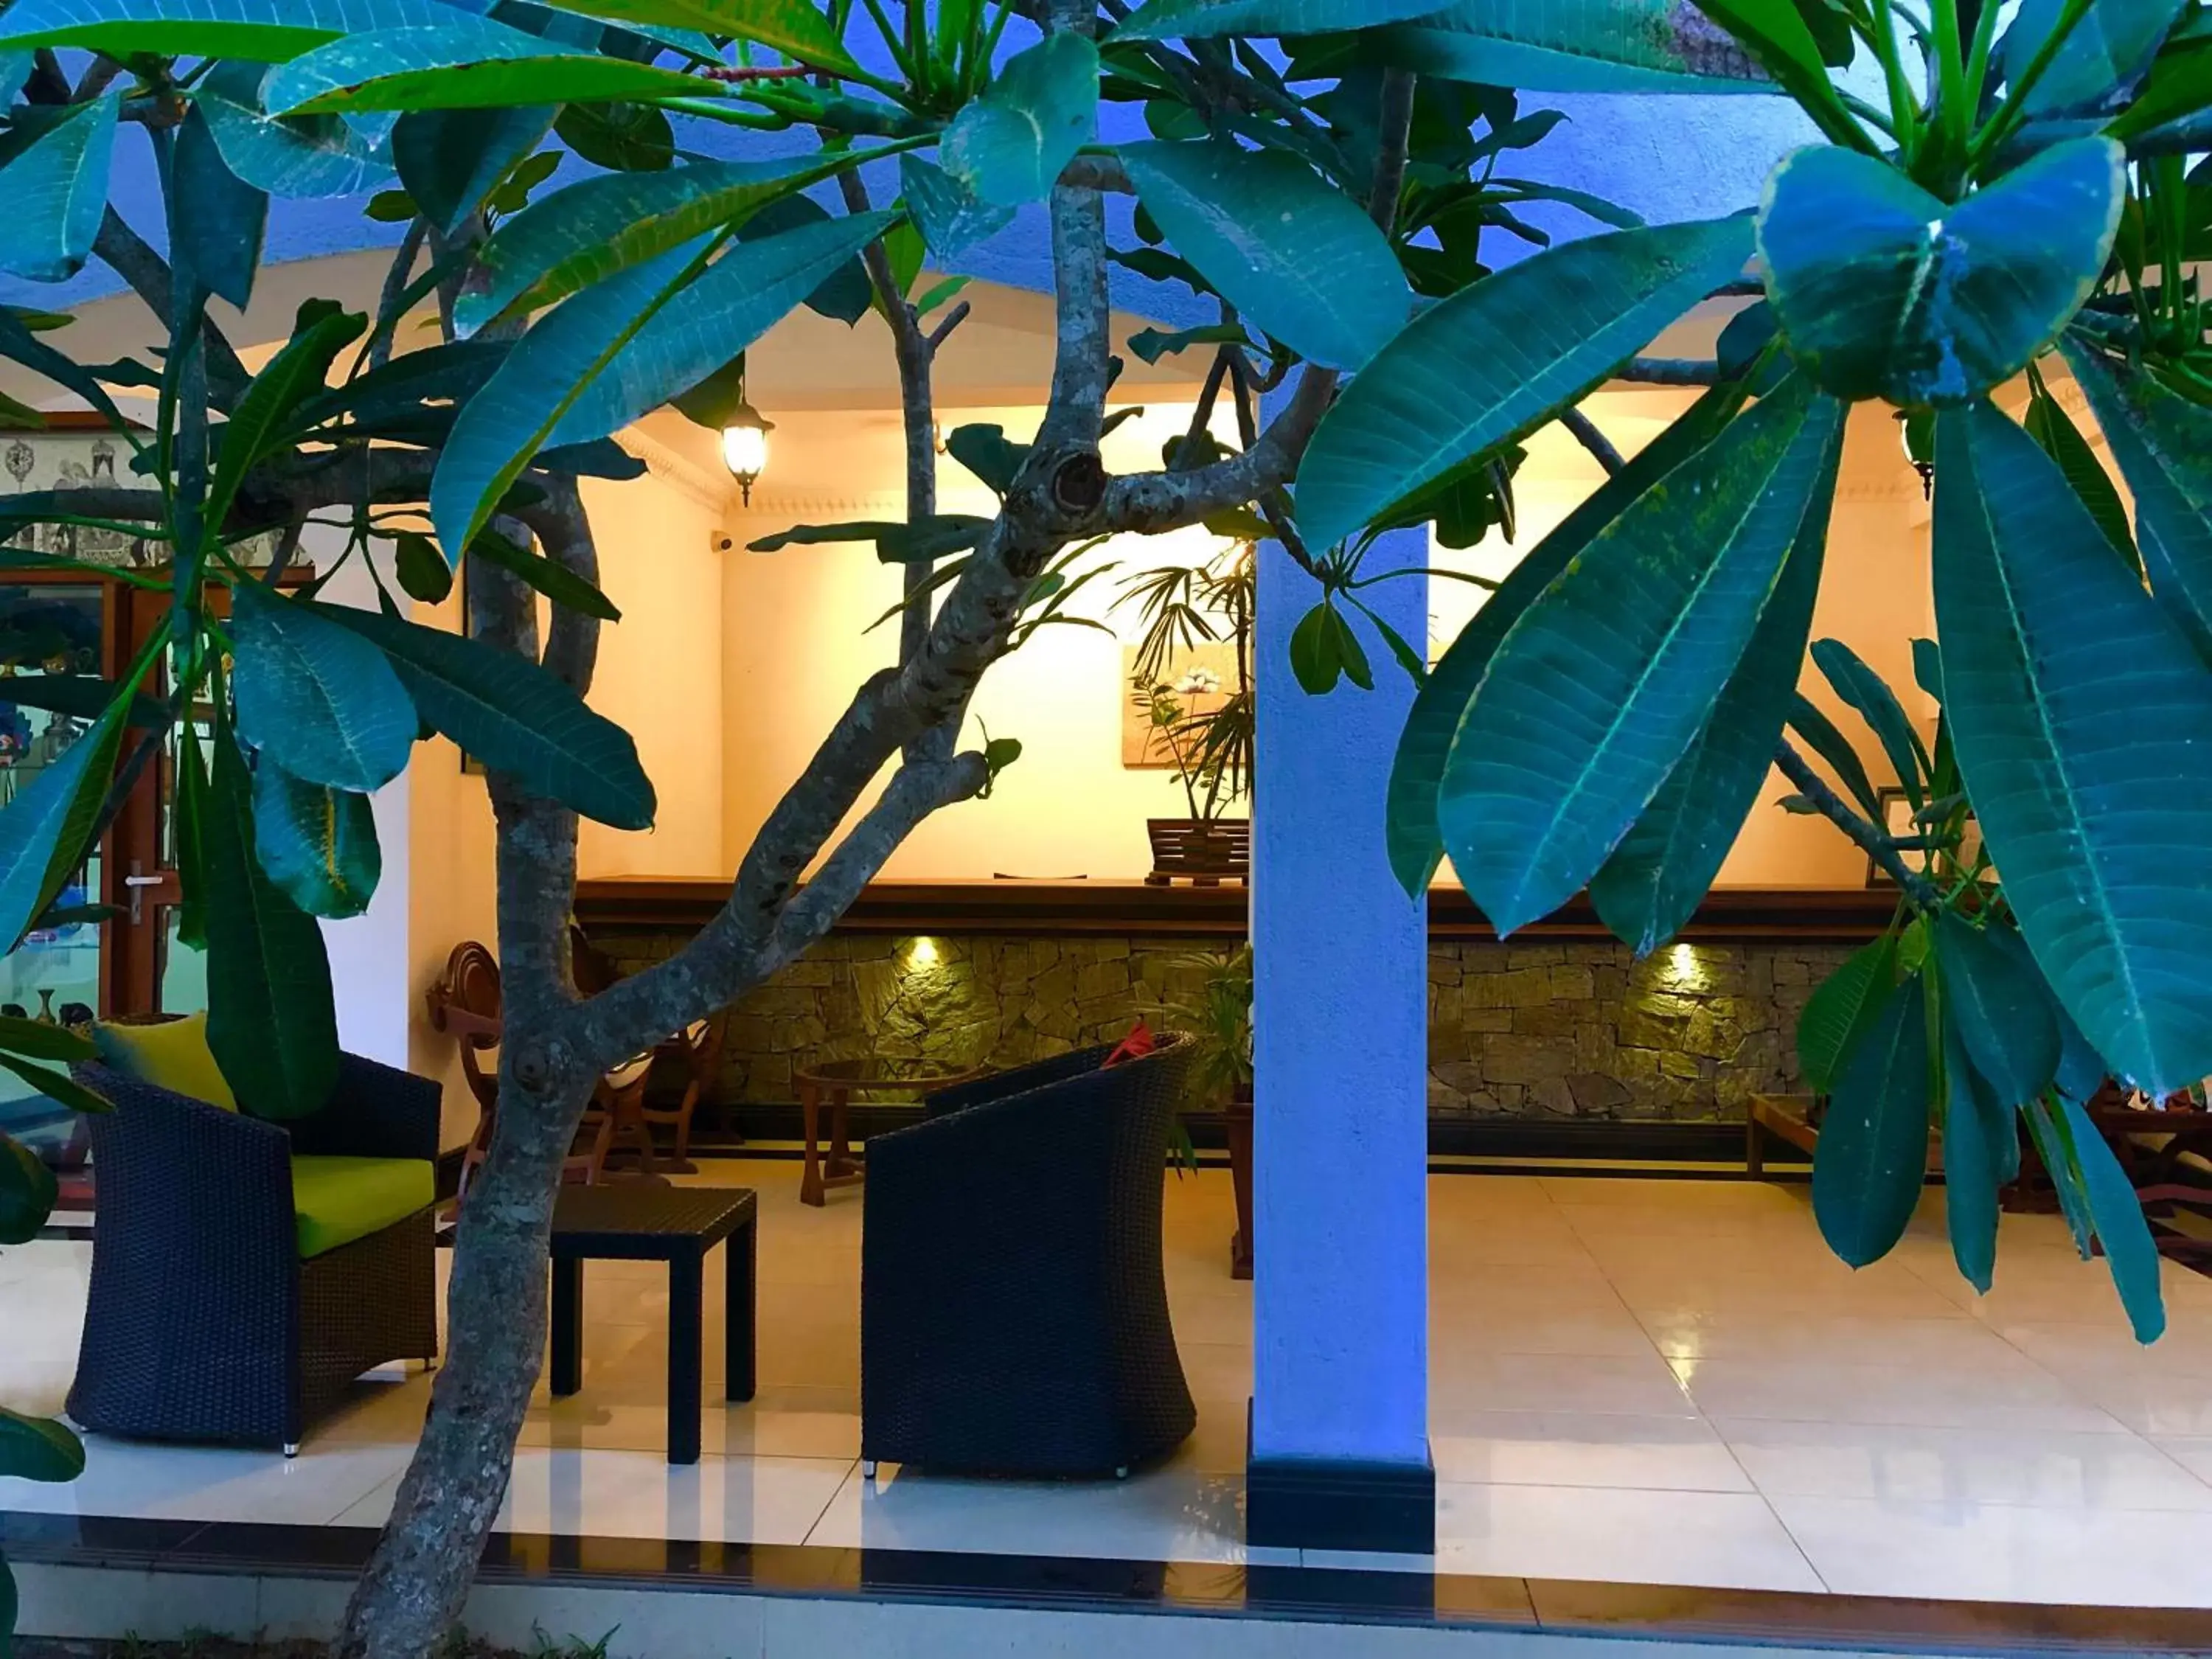 Lobby or reception in Elegant Hotel